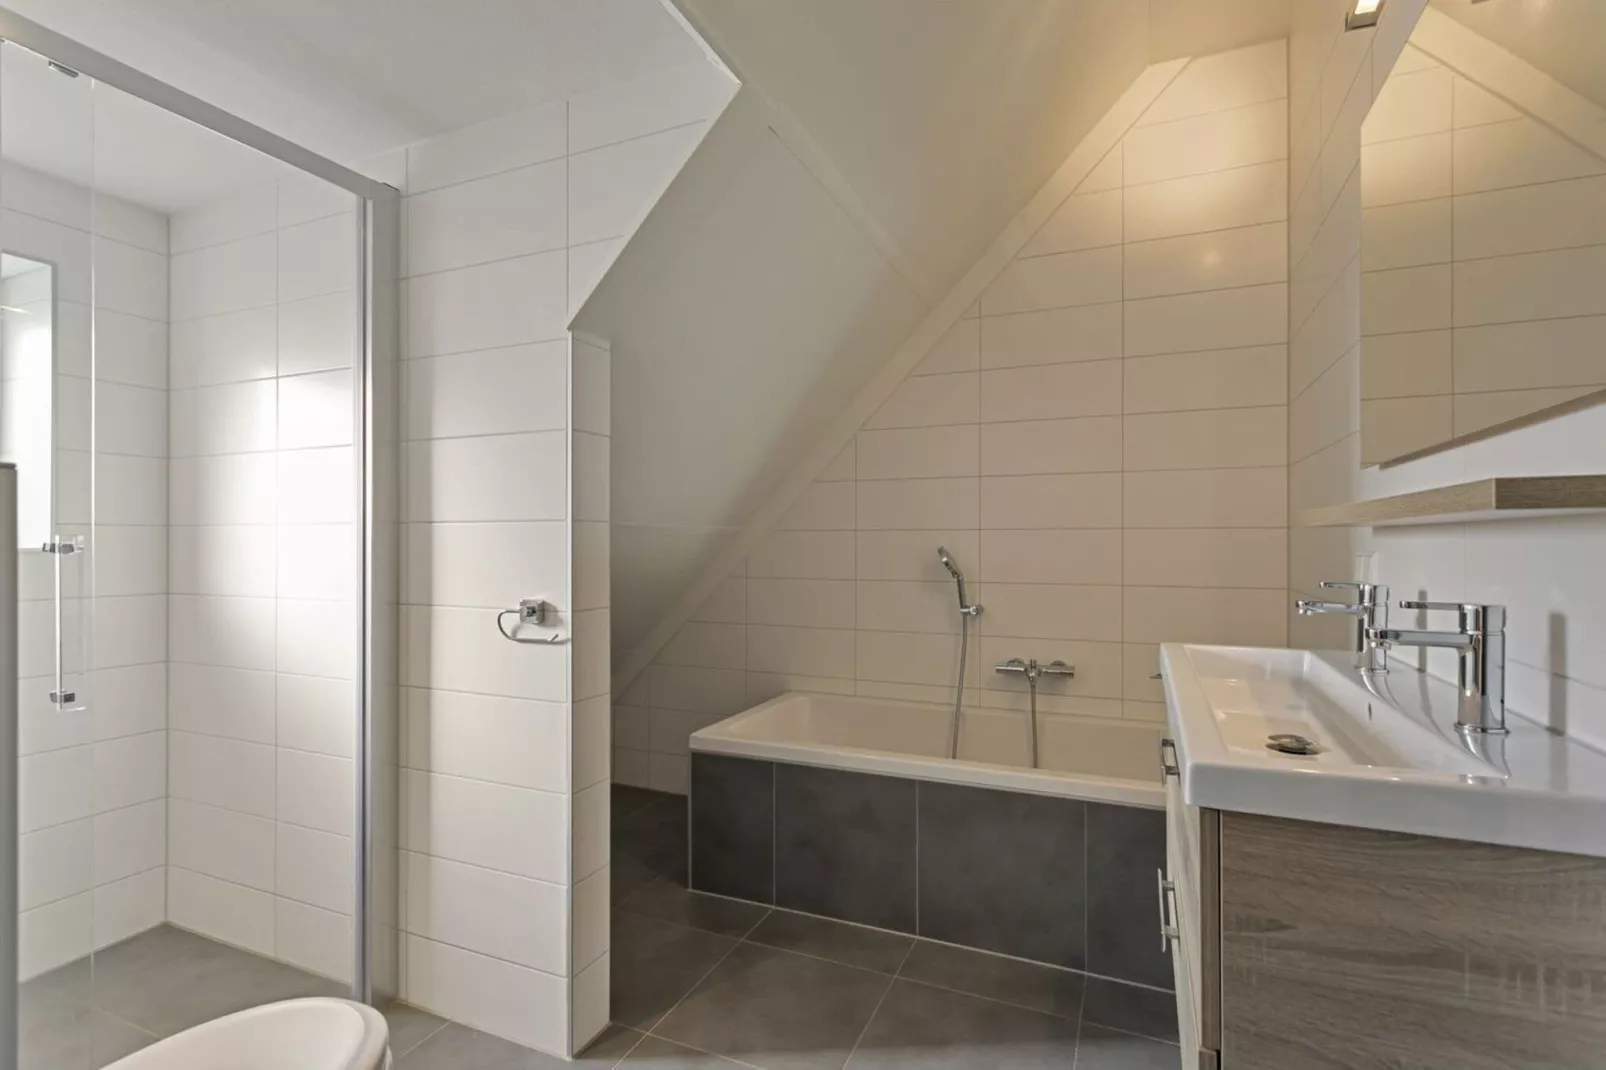 Villa Hopper met jacuzzi extra kosten voor gebruik-Badkamer